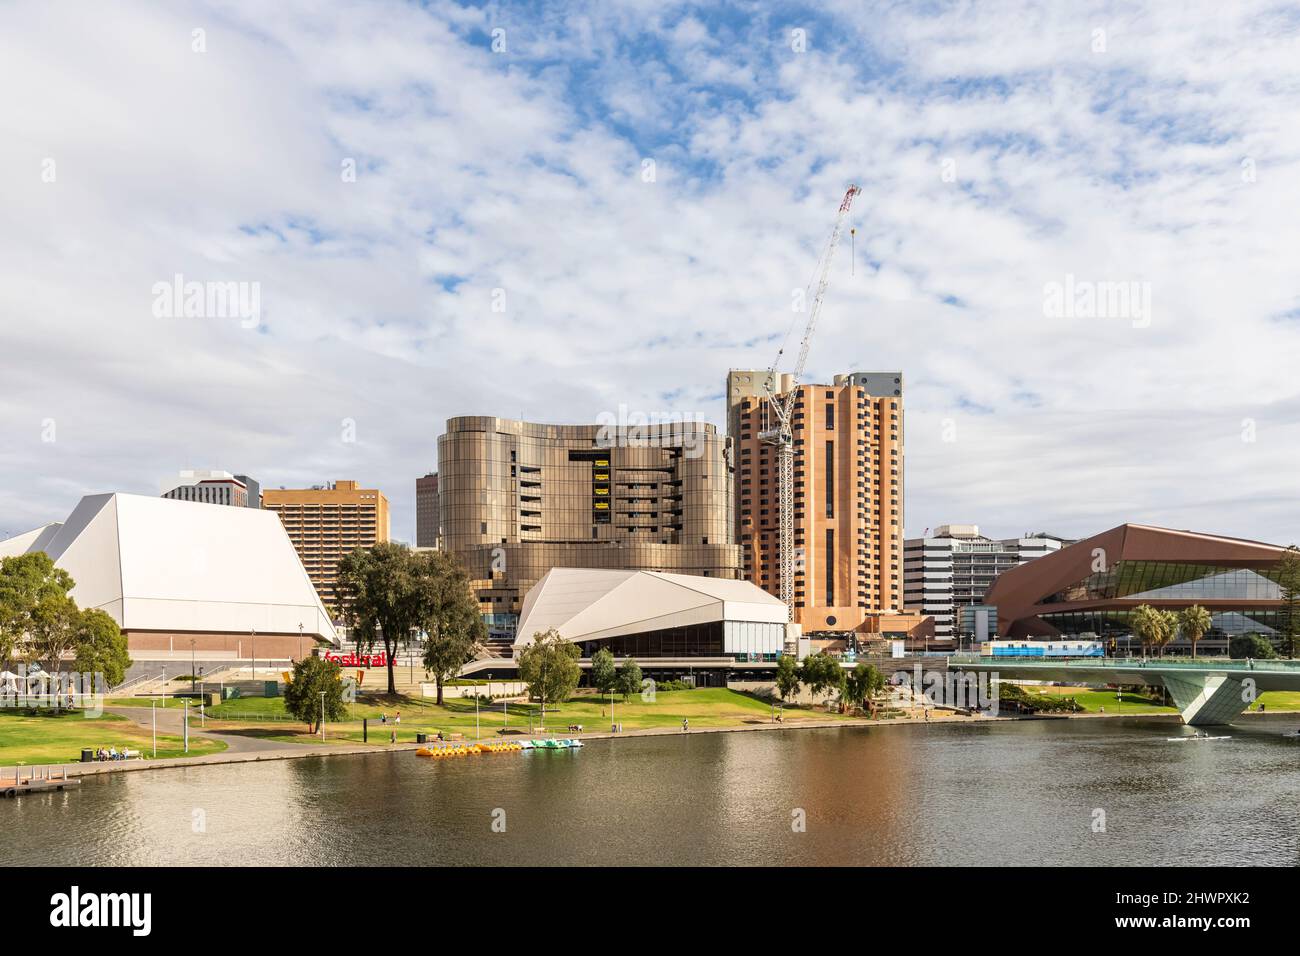 Australia, South Australia, Adelaide, River Torrens e Elder Park con il Centro Festival di Adelaide e il Centro Congressi di Adelaide in background Foto Stock